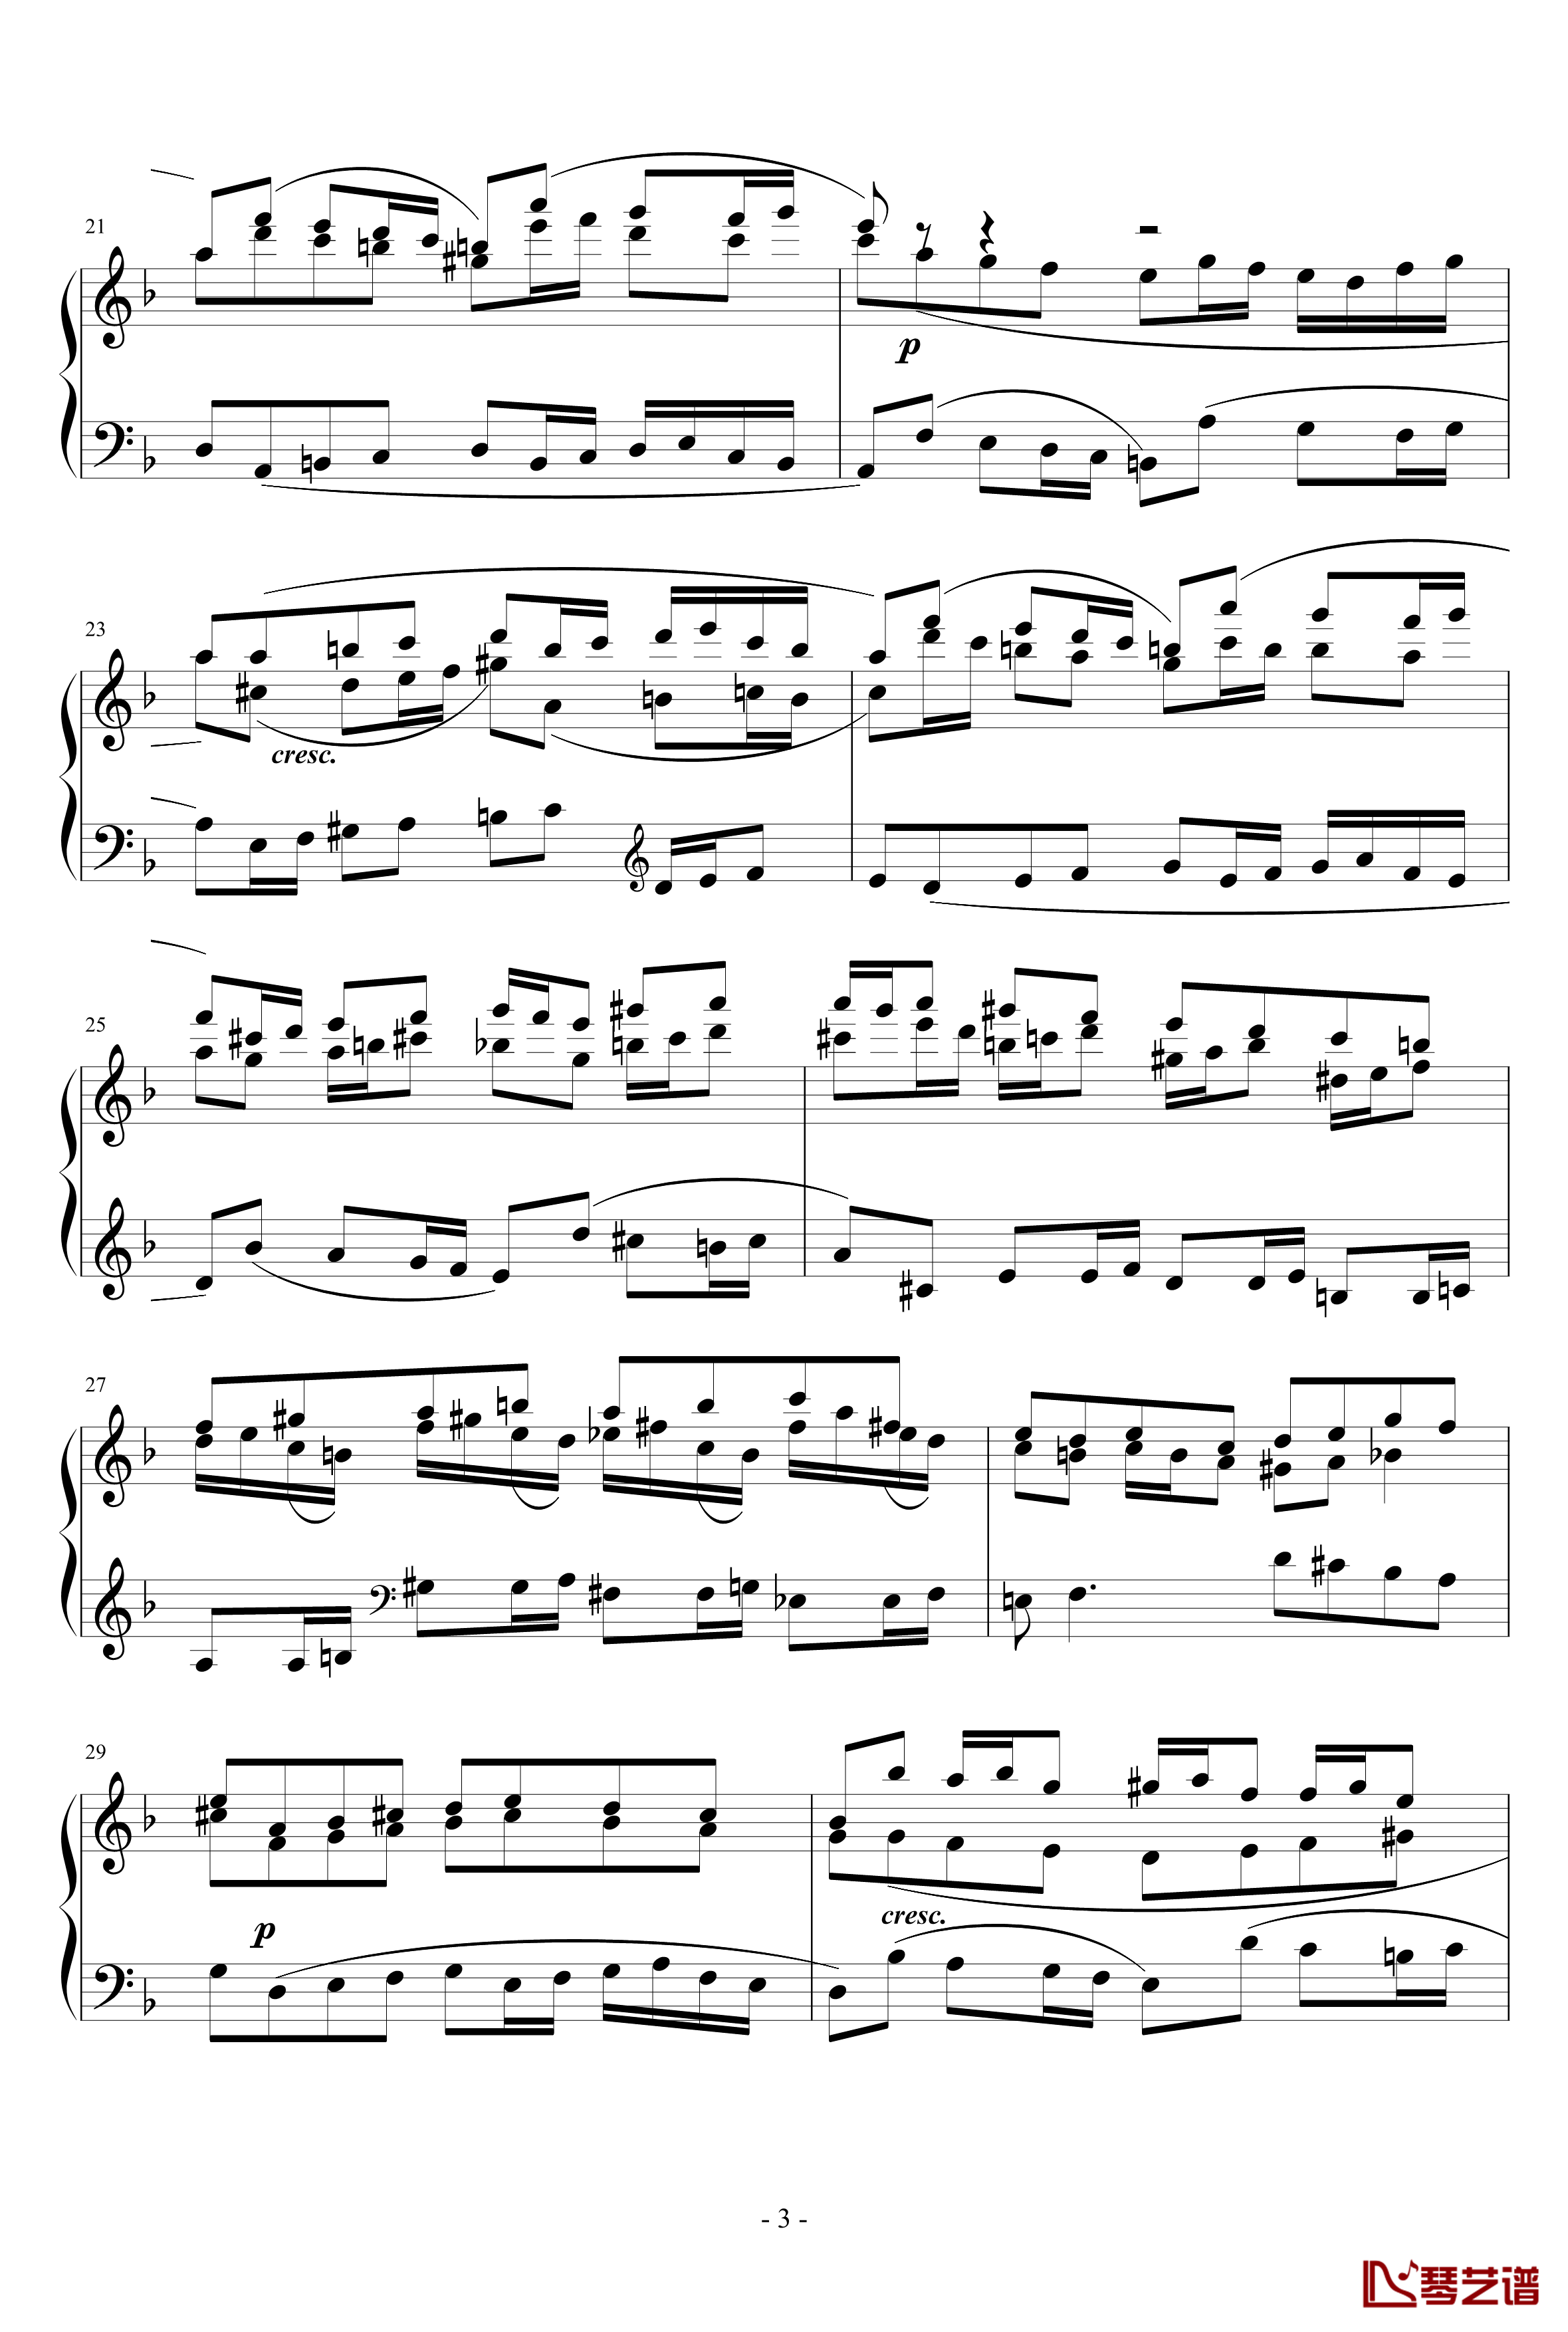 二部小赋格曲NO.19(c小调)《巴赫 小前奏曲与赋格曲》钢琴谱钢琴简谱 数字谱 钢琴双手简谱_文档下载